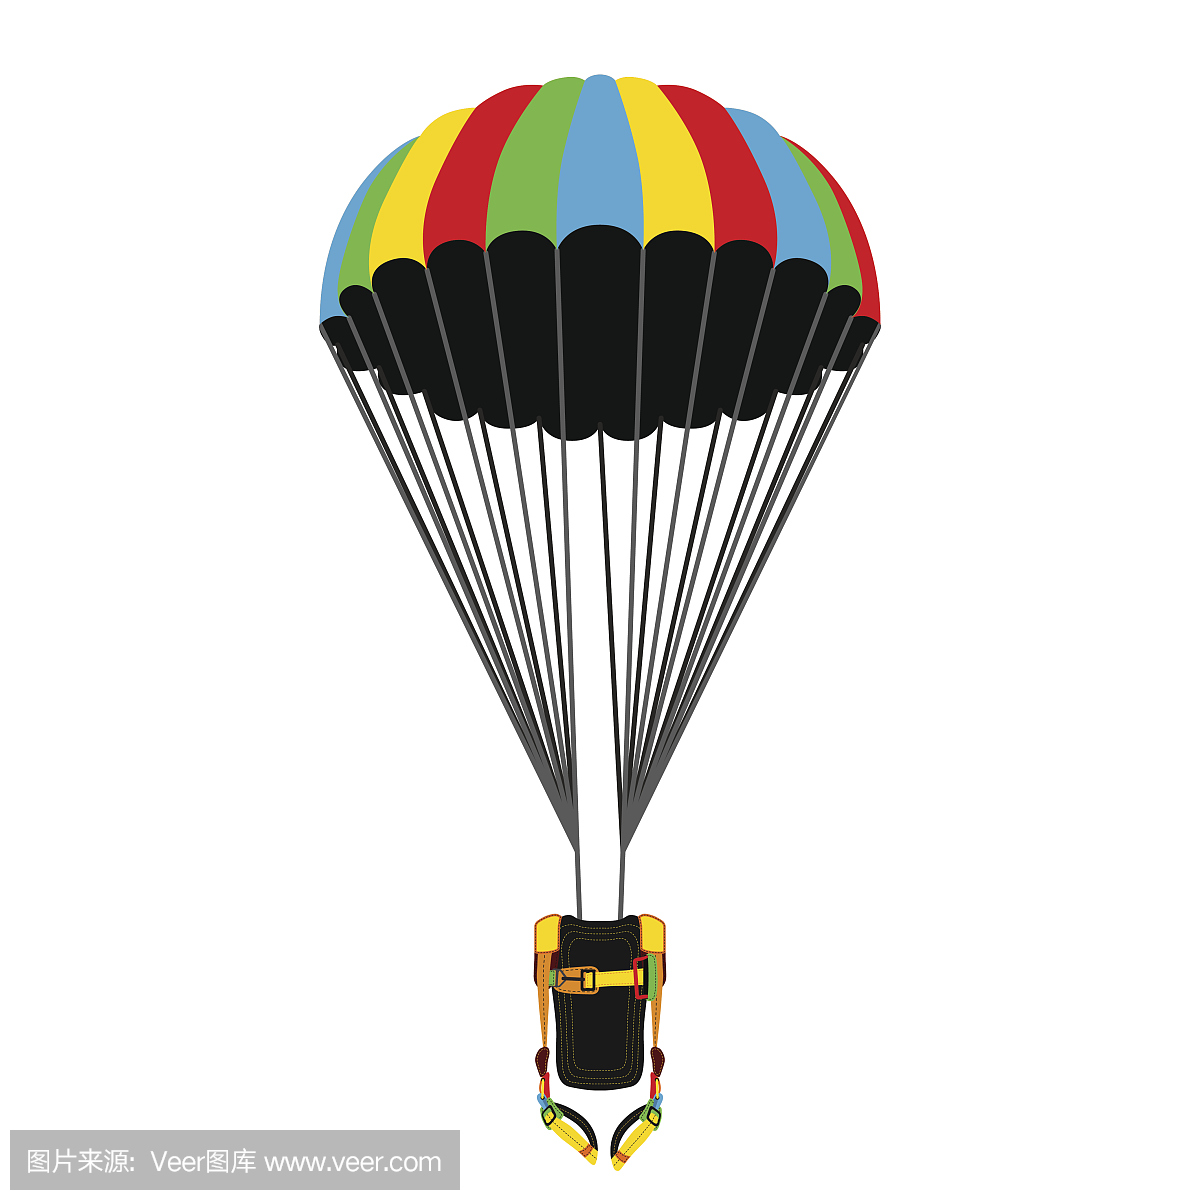 降落伞包与打开的降落伞。跳伞明亮的极限运动